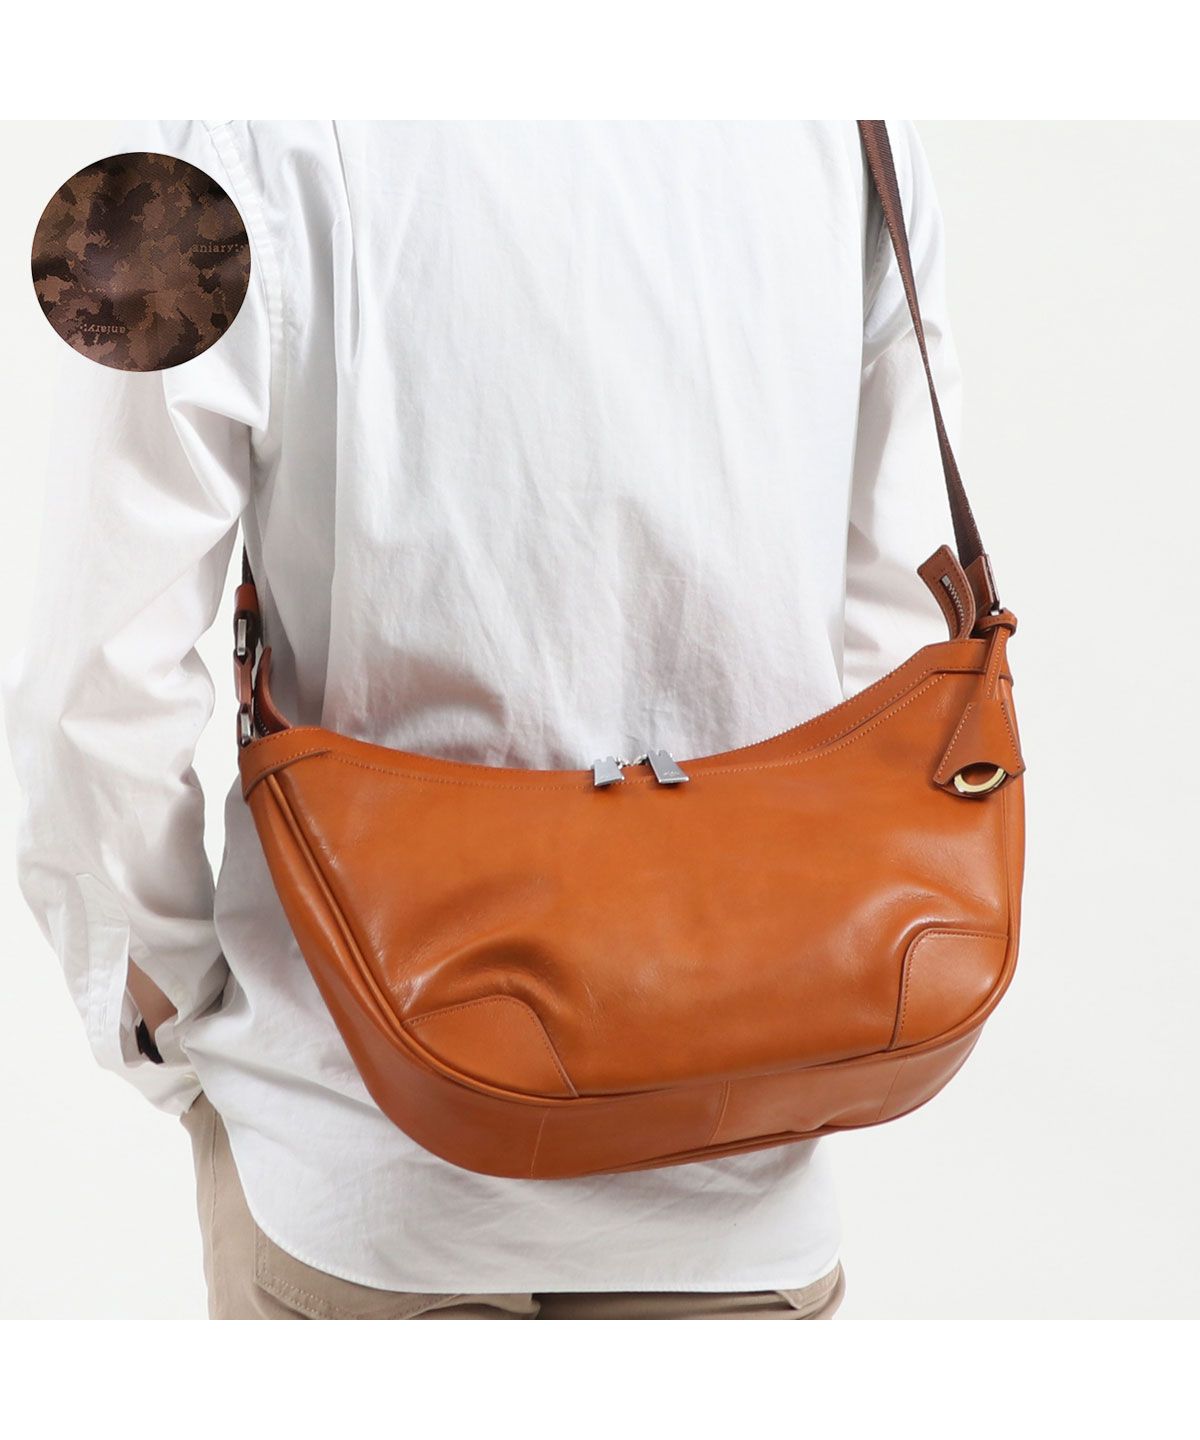 【正規取扱店】 アニアリ ショルダーバッグ aniary バッグ Antique Leather 斜めがけバッグ 本革 01－03008